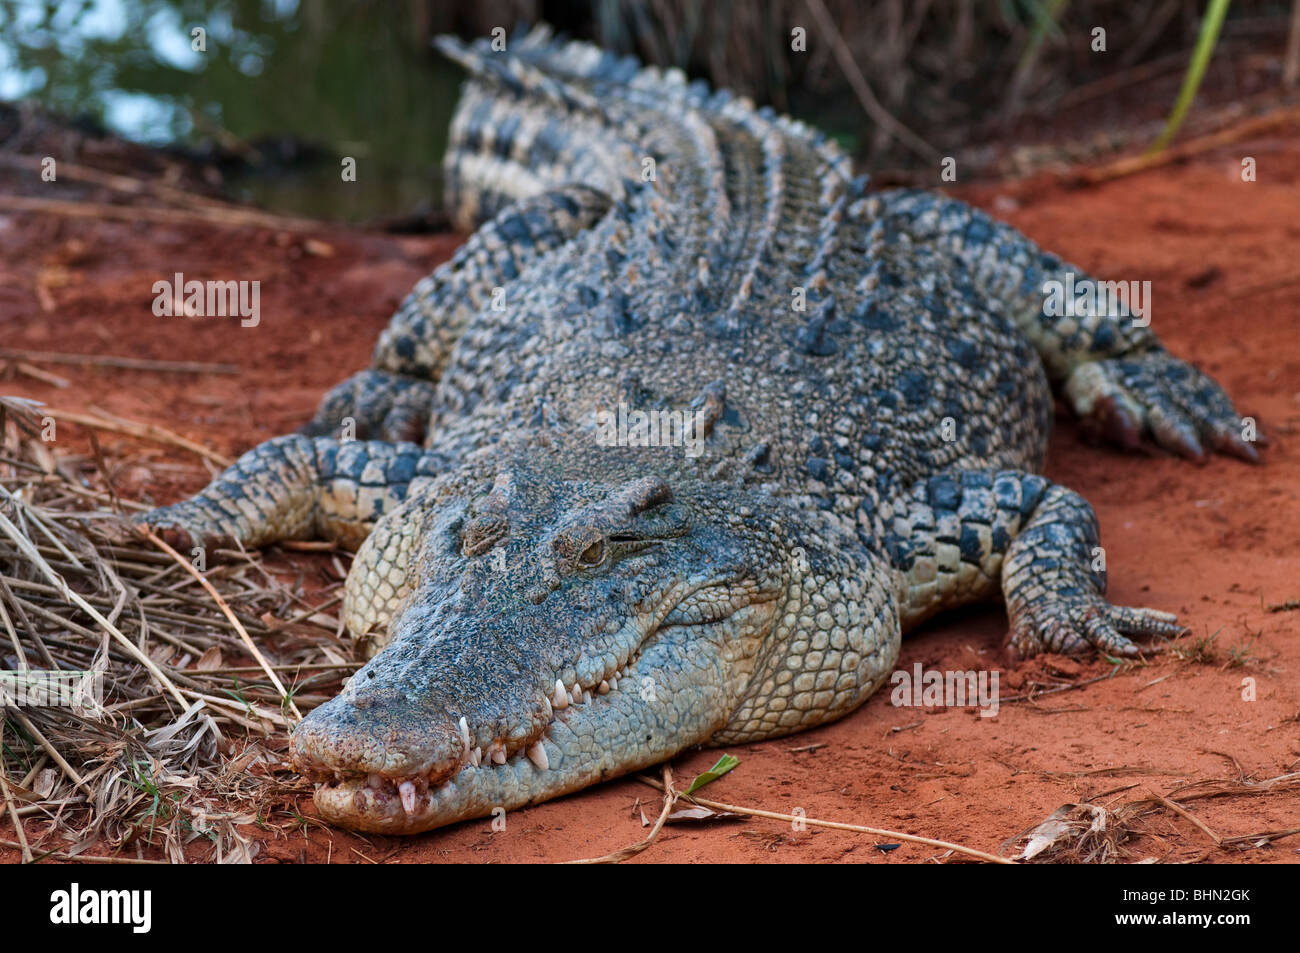 Crocodile D'Eau Salée australien, crocodylis porosus Photograpé à Broome, Australie occidentale Banque D'Images